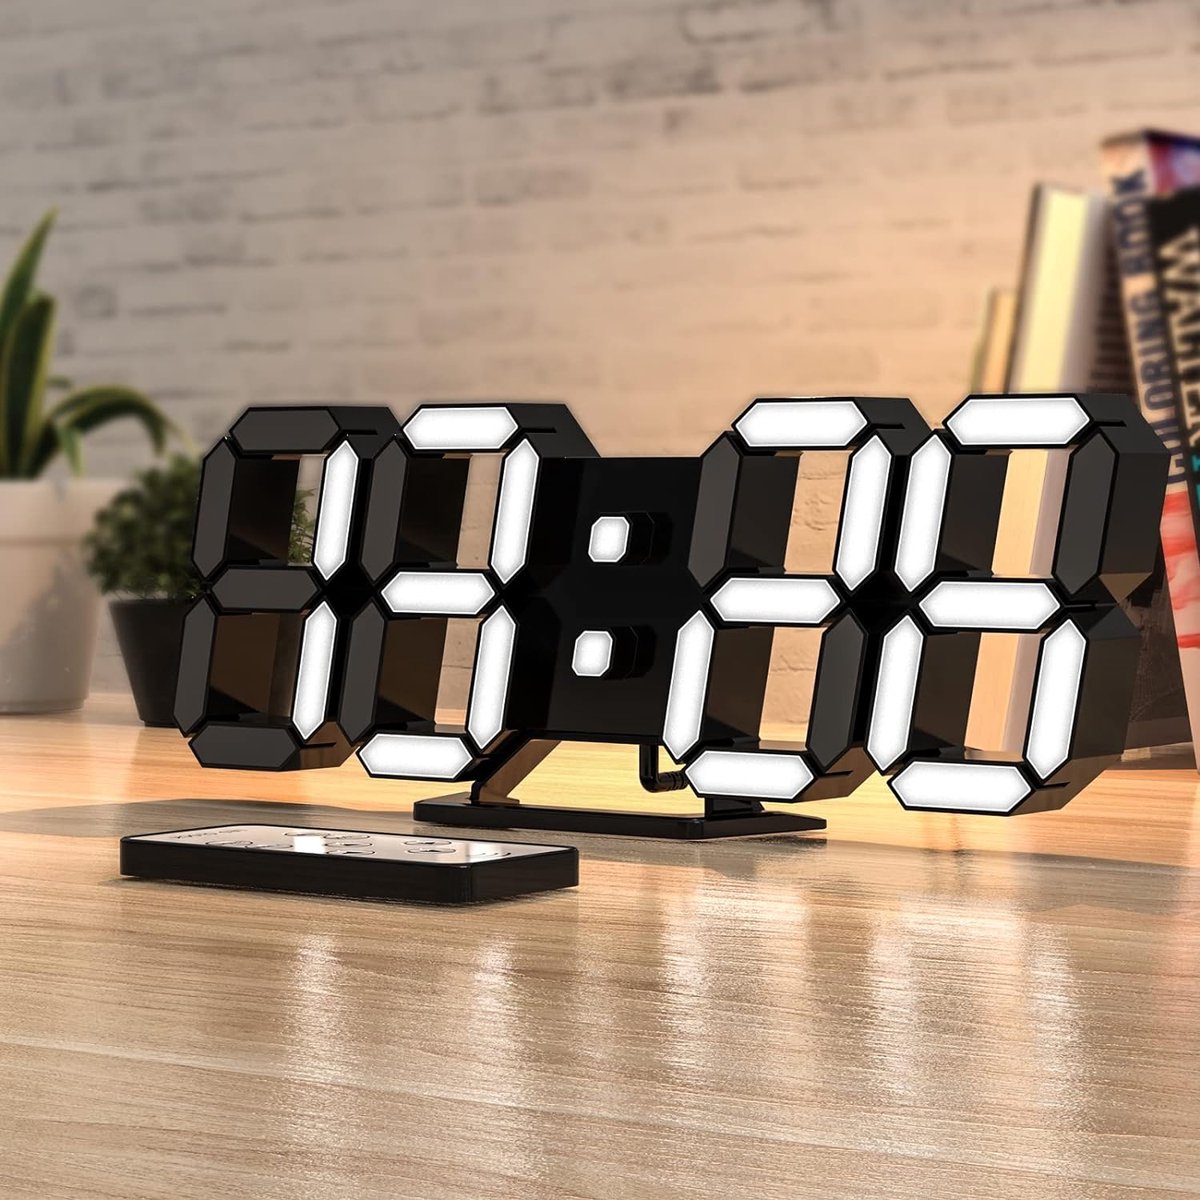 Horloge LED digitale XXXL avec fonction réveil et télécommande